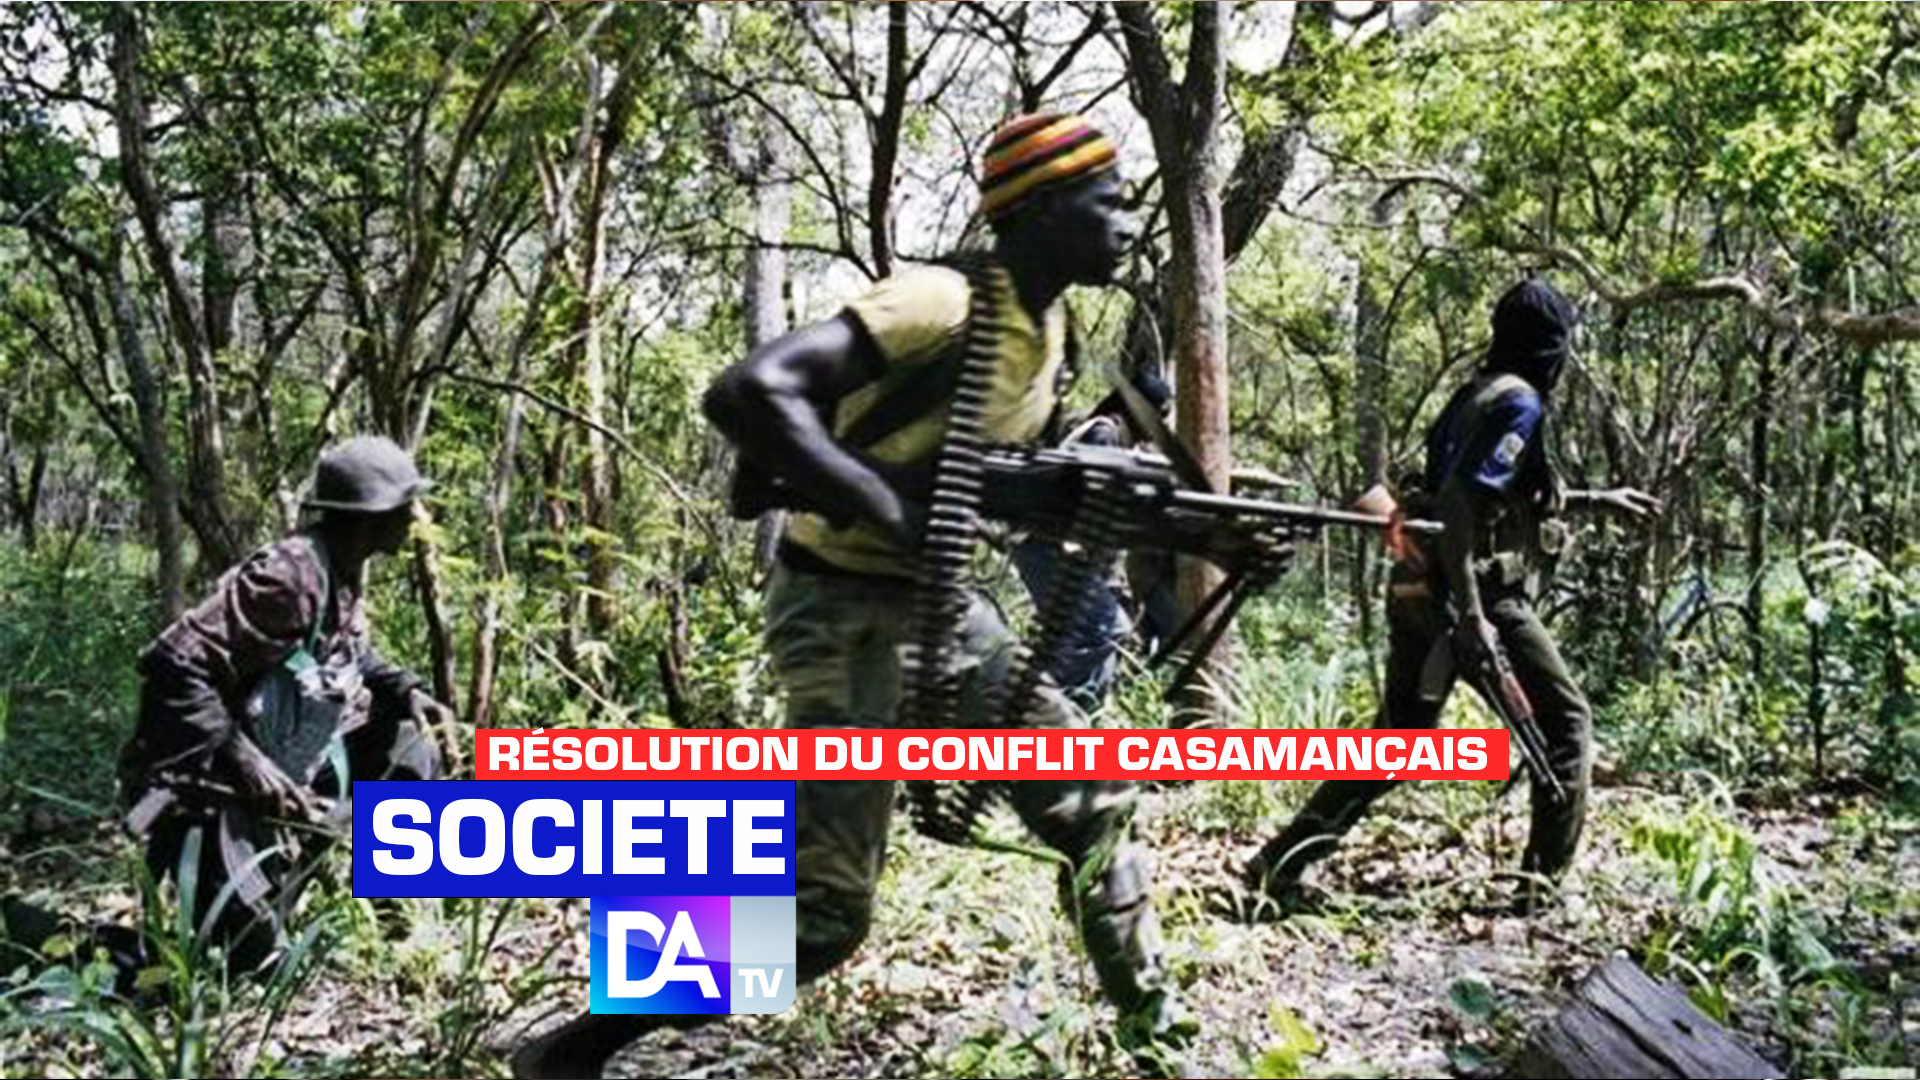 Résolution du conflit casamançais : Le département d’État américain reconnaît les efforts du Sénégal, mais condamne les abus sur les civils